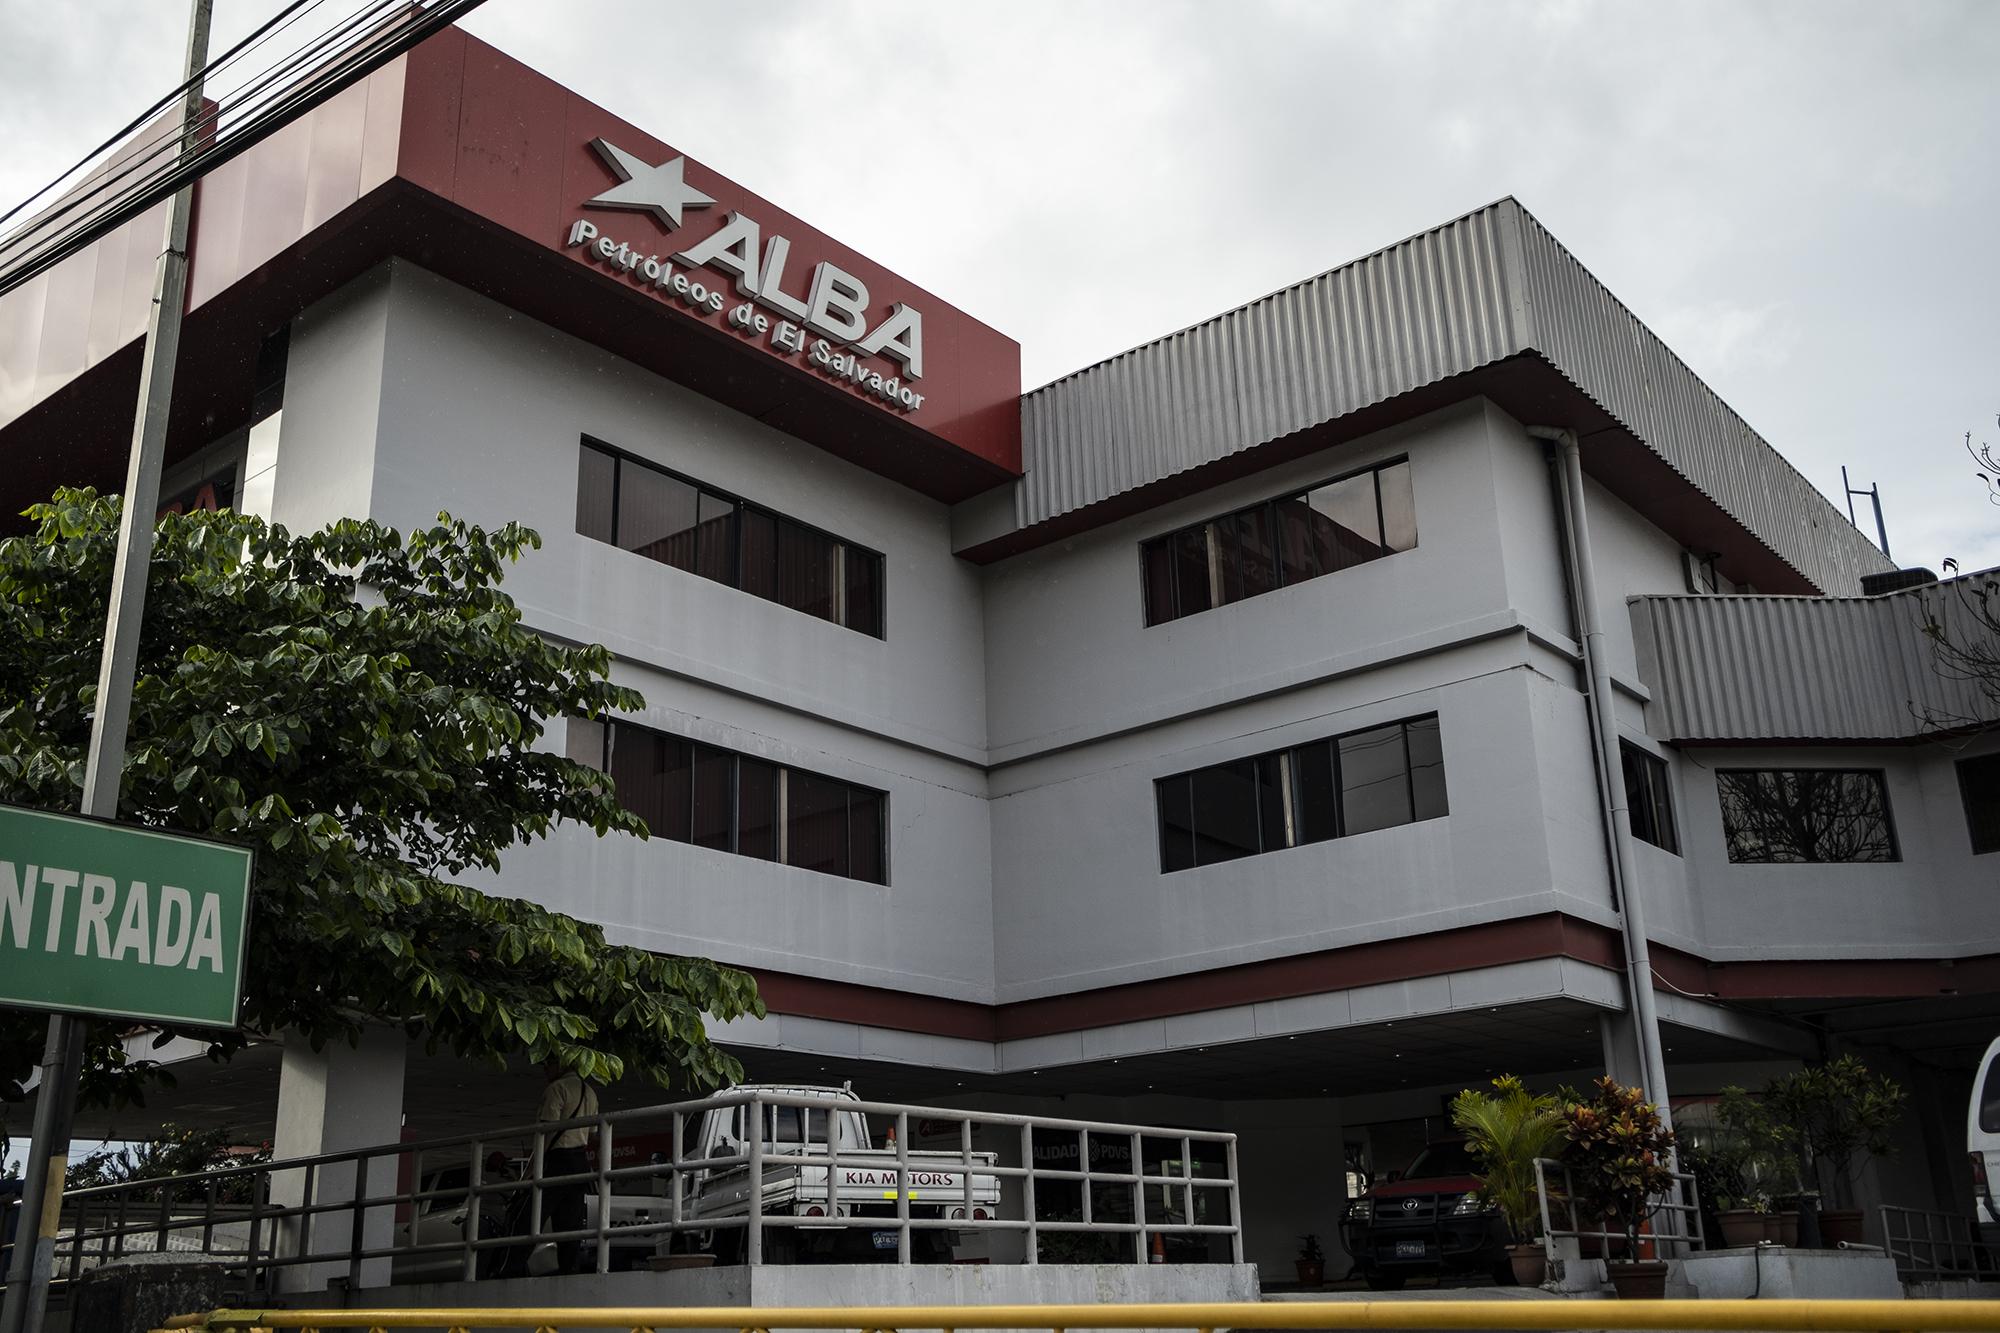  Sede de la empresa Alba Petróleos ubicada en Santa Elena, Antiguo Cuscatlán. Foto de El Faro: Carlos Barrera